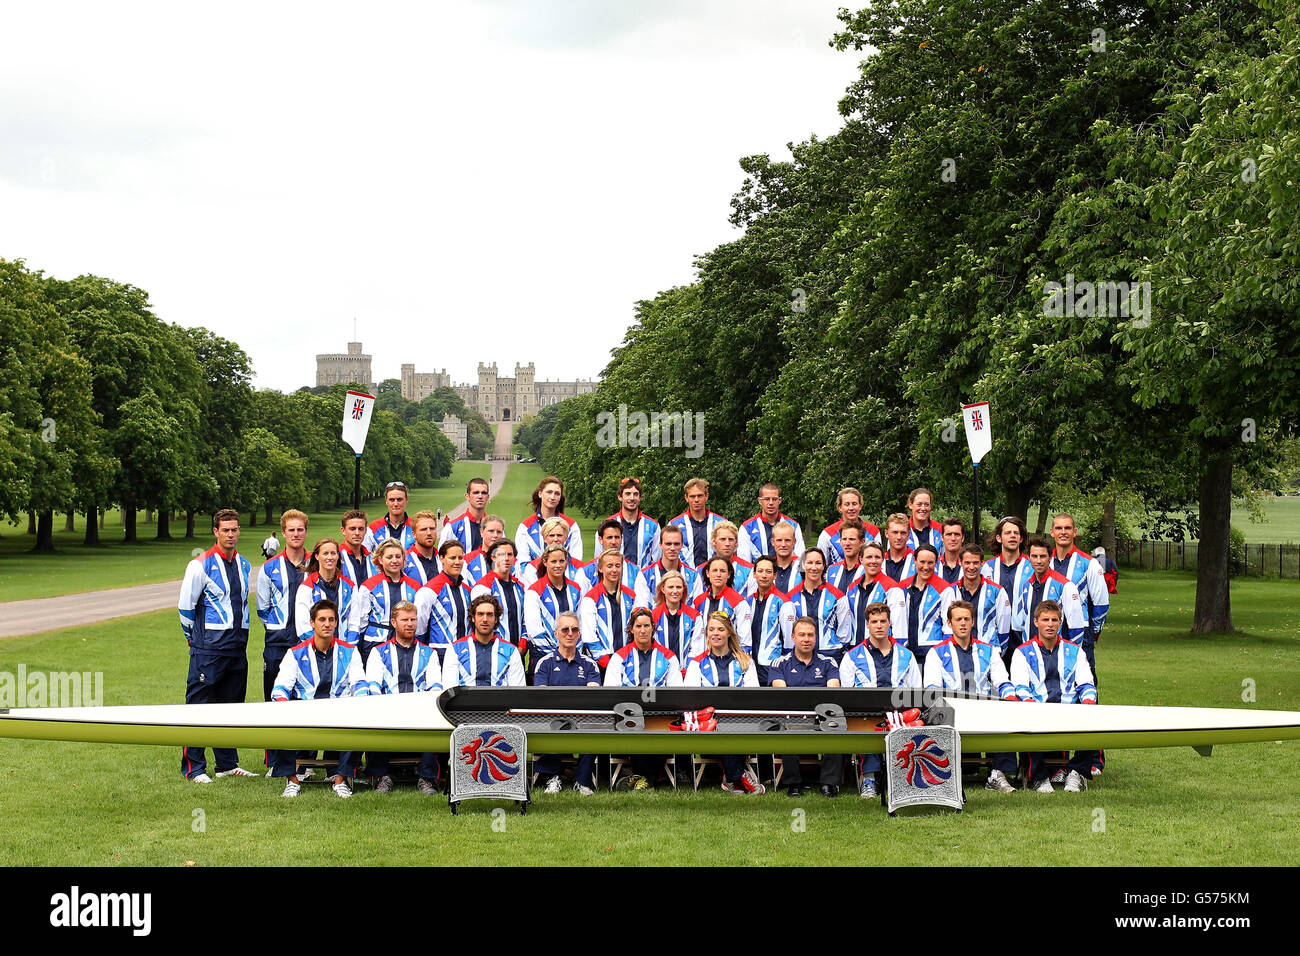 Aviron - annonce de l'équipe GB - Harte and Garter Hotel.Un groupe d'équipe de l'équipe d'aviron du GB pour participer aux Jeux olympiques de 2012, photographié sur la longue promenade en direction du château de Windsor, à Windsor. Banque D'Images